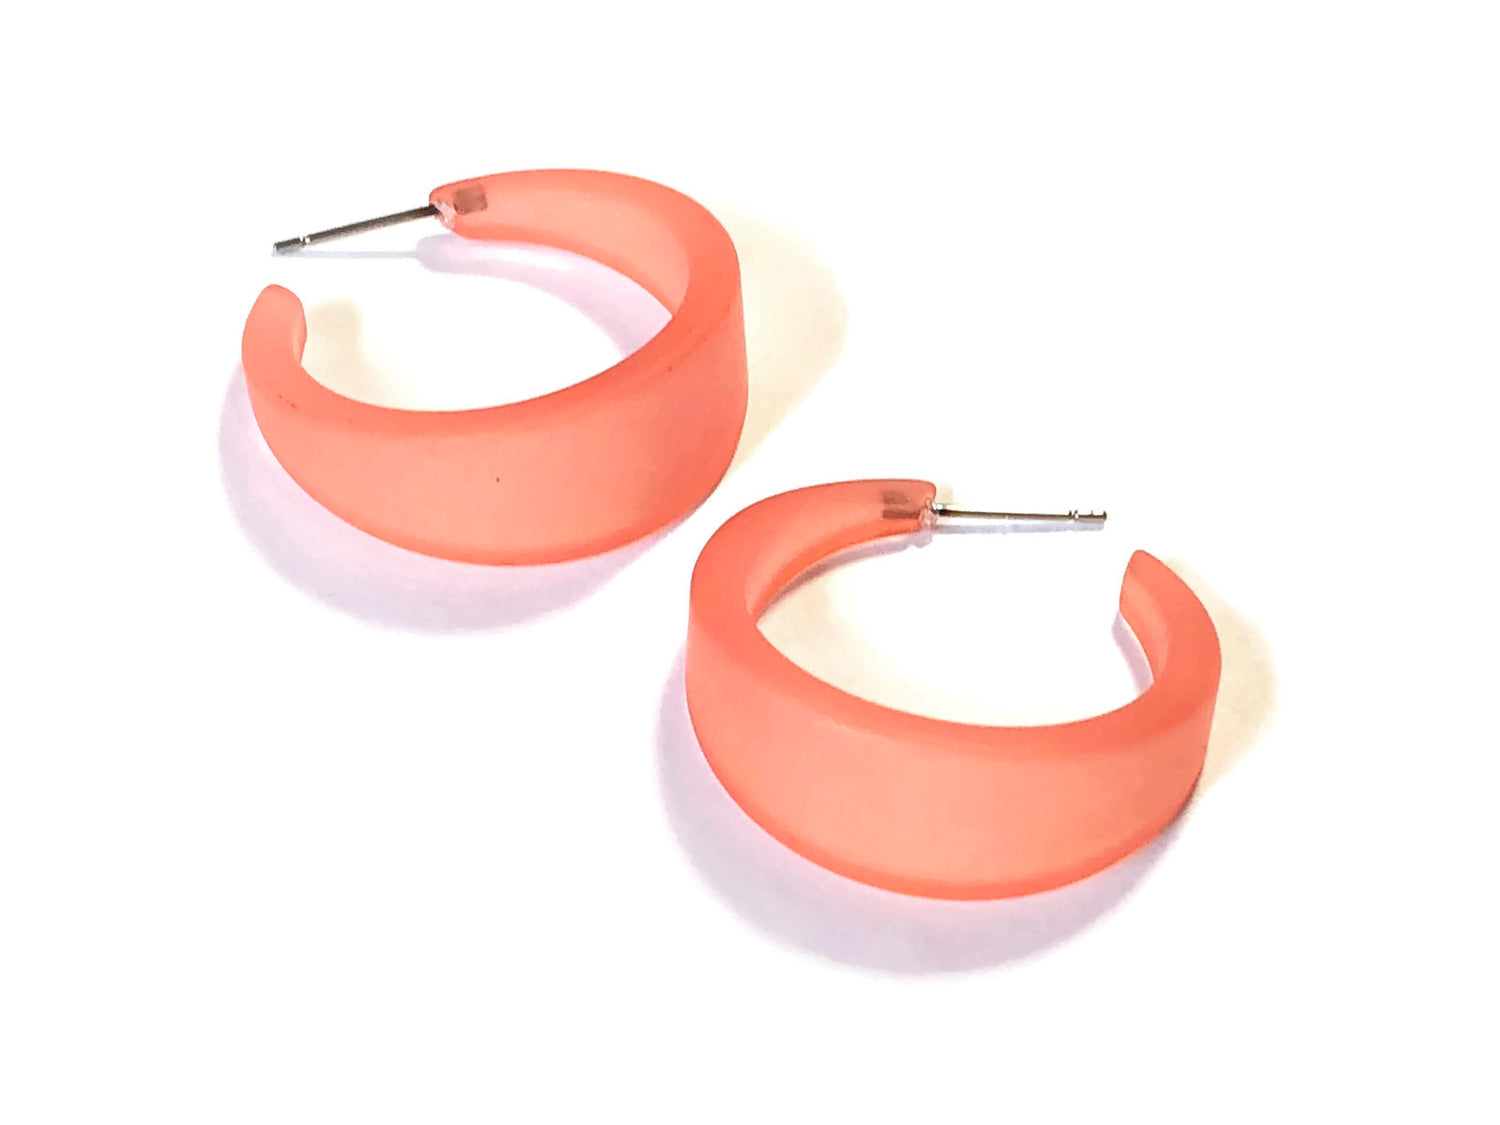 salmon earrings